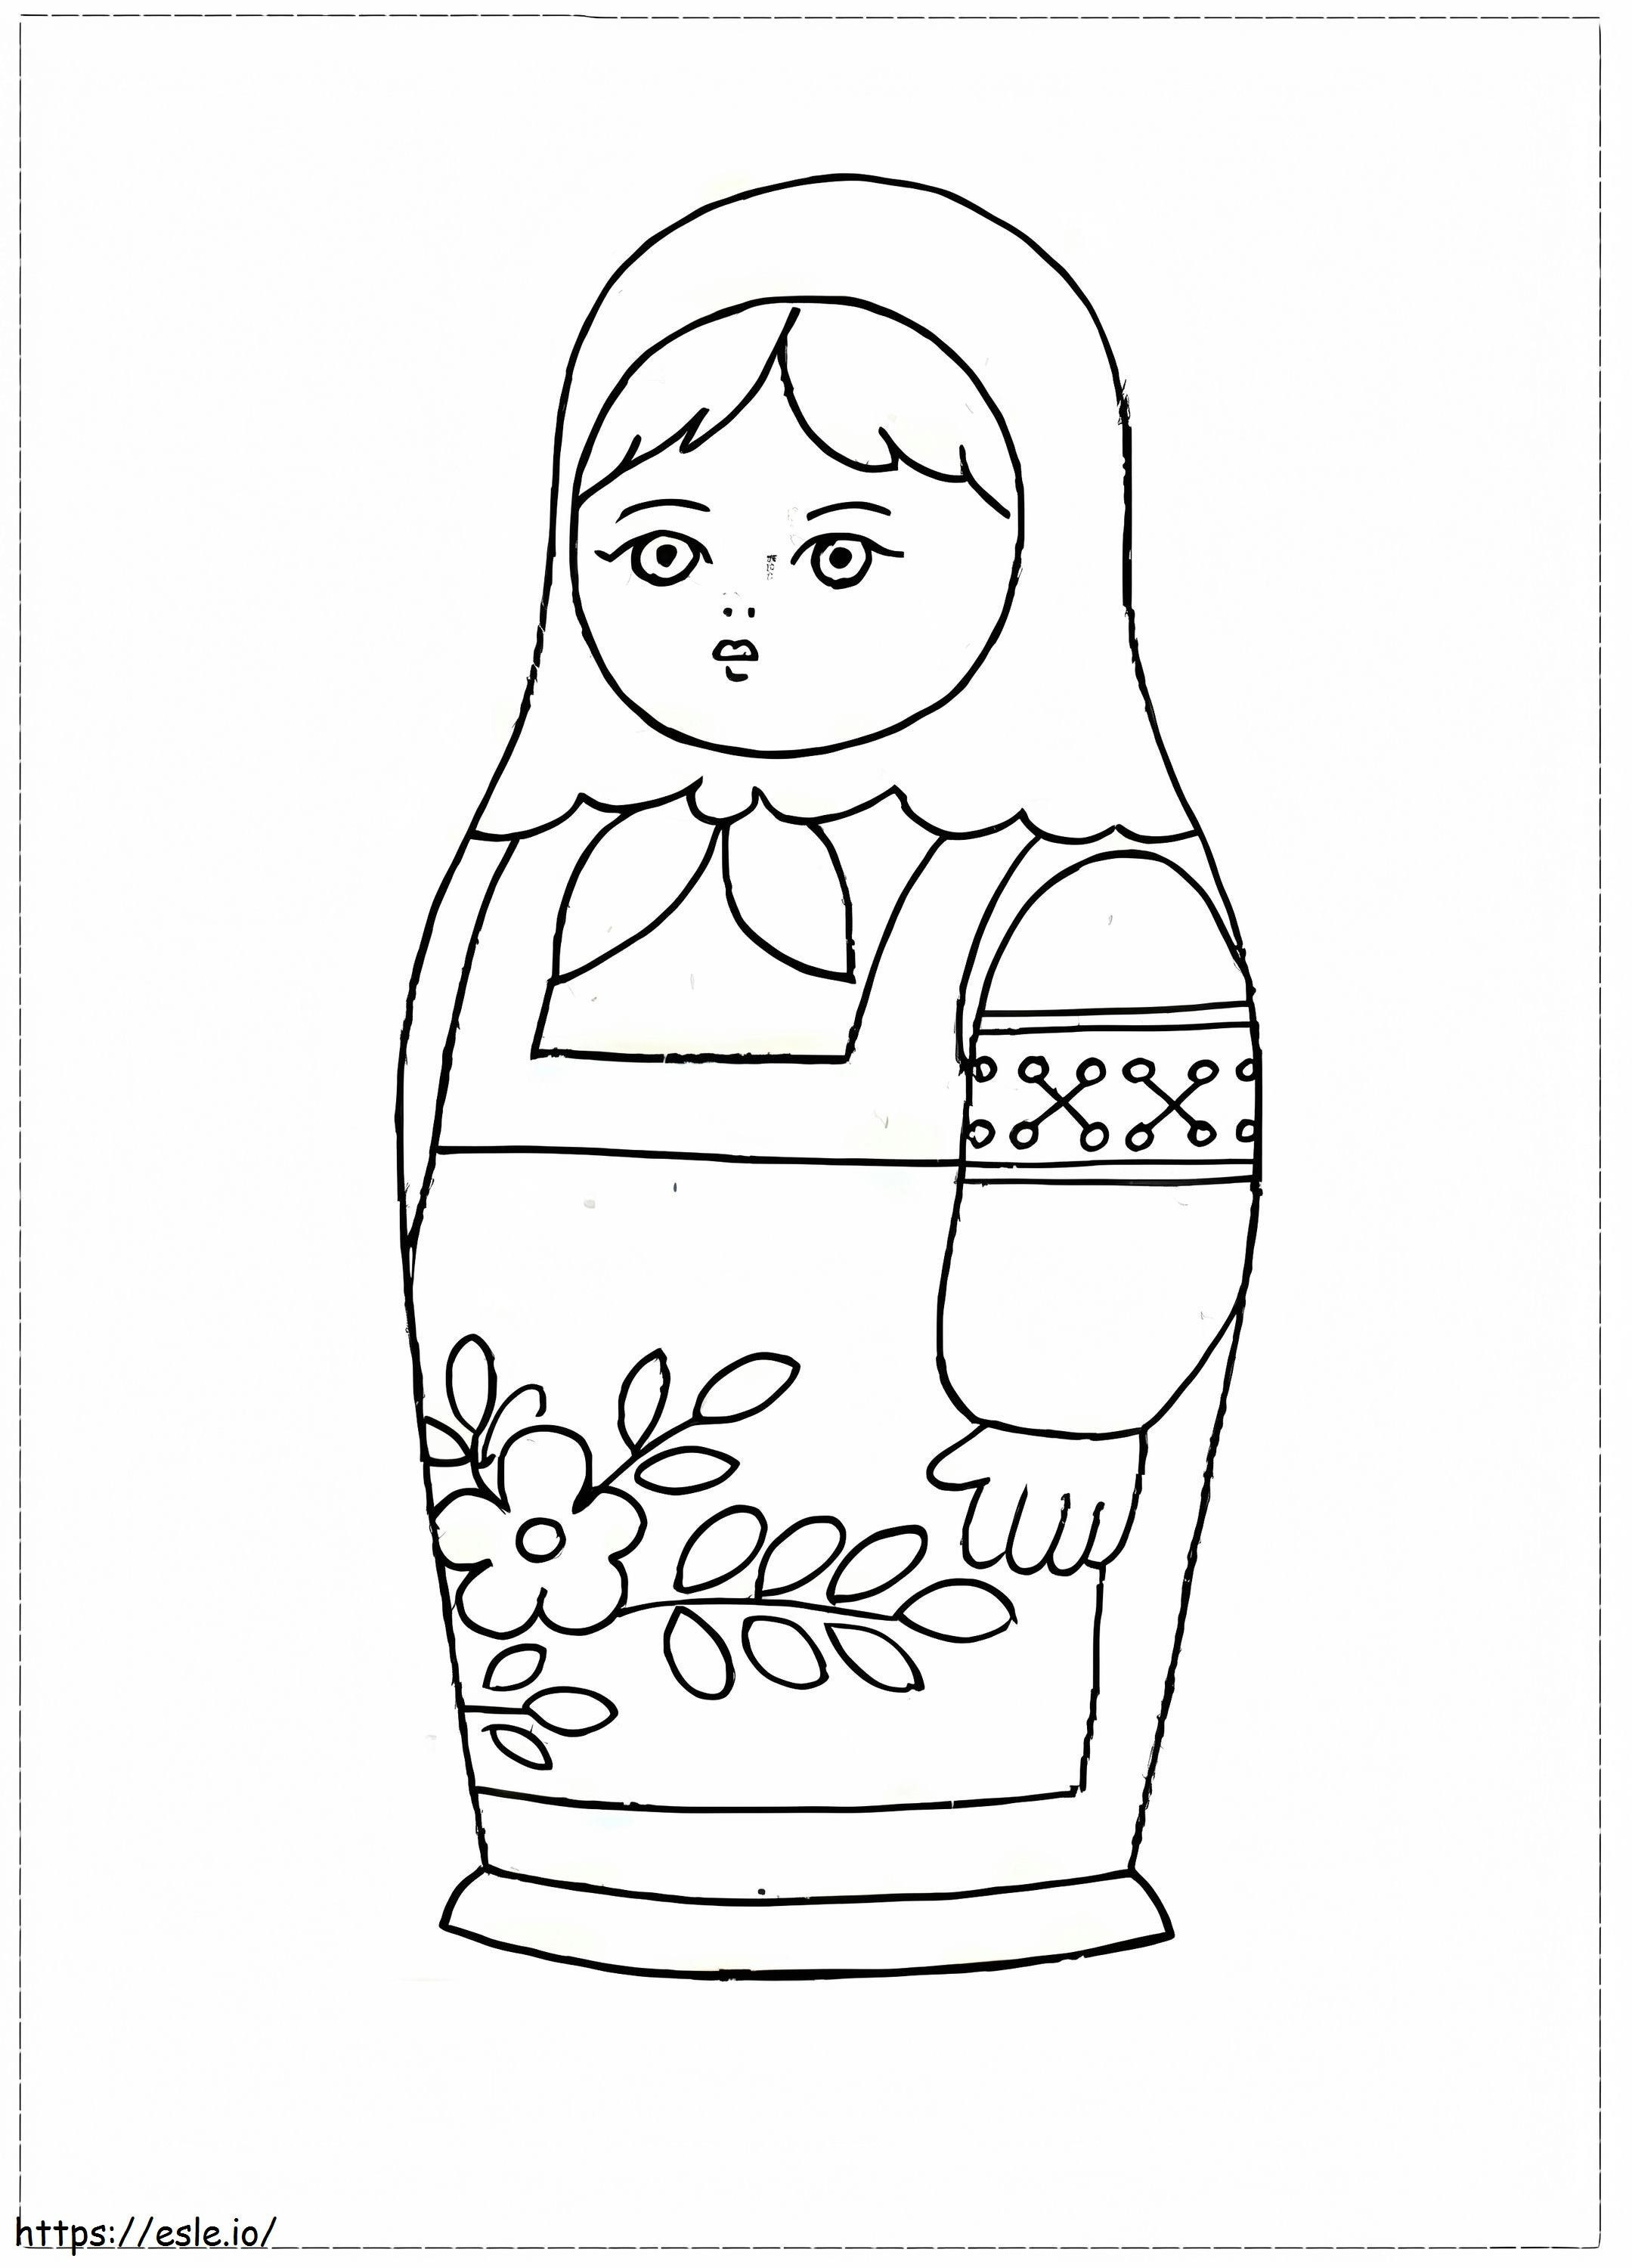 A Matryoshka Doll coloring page